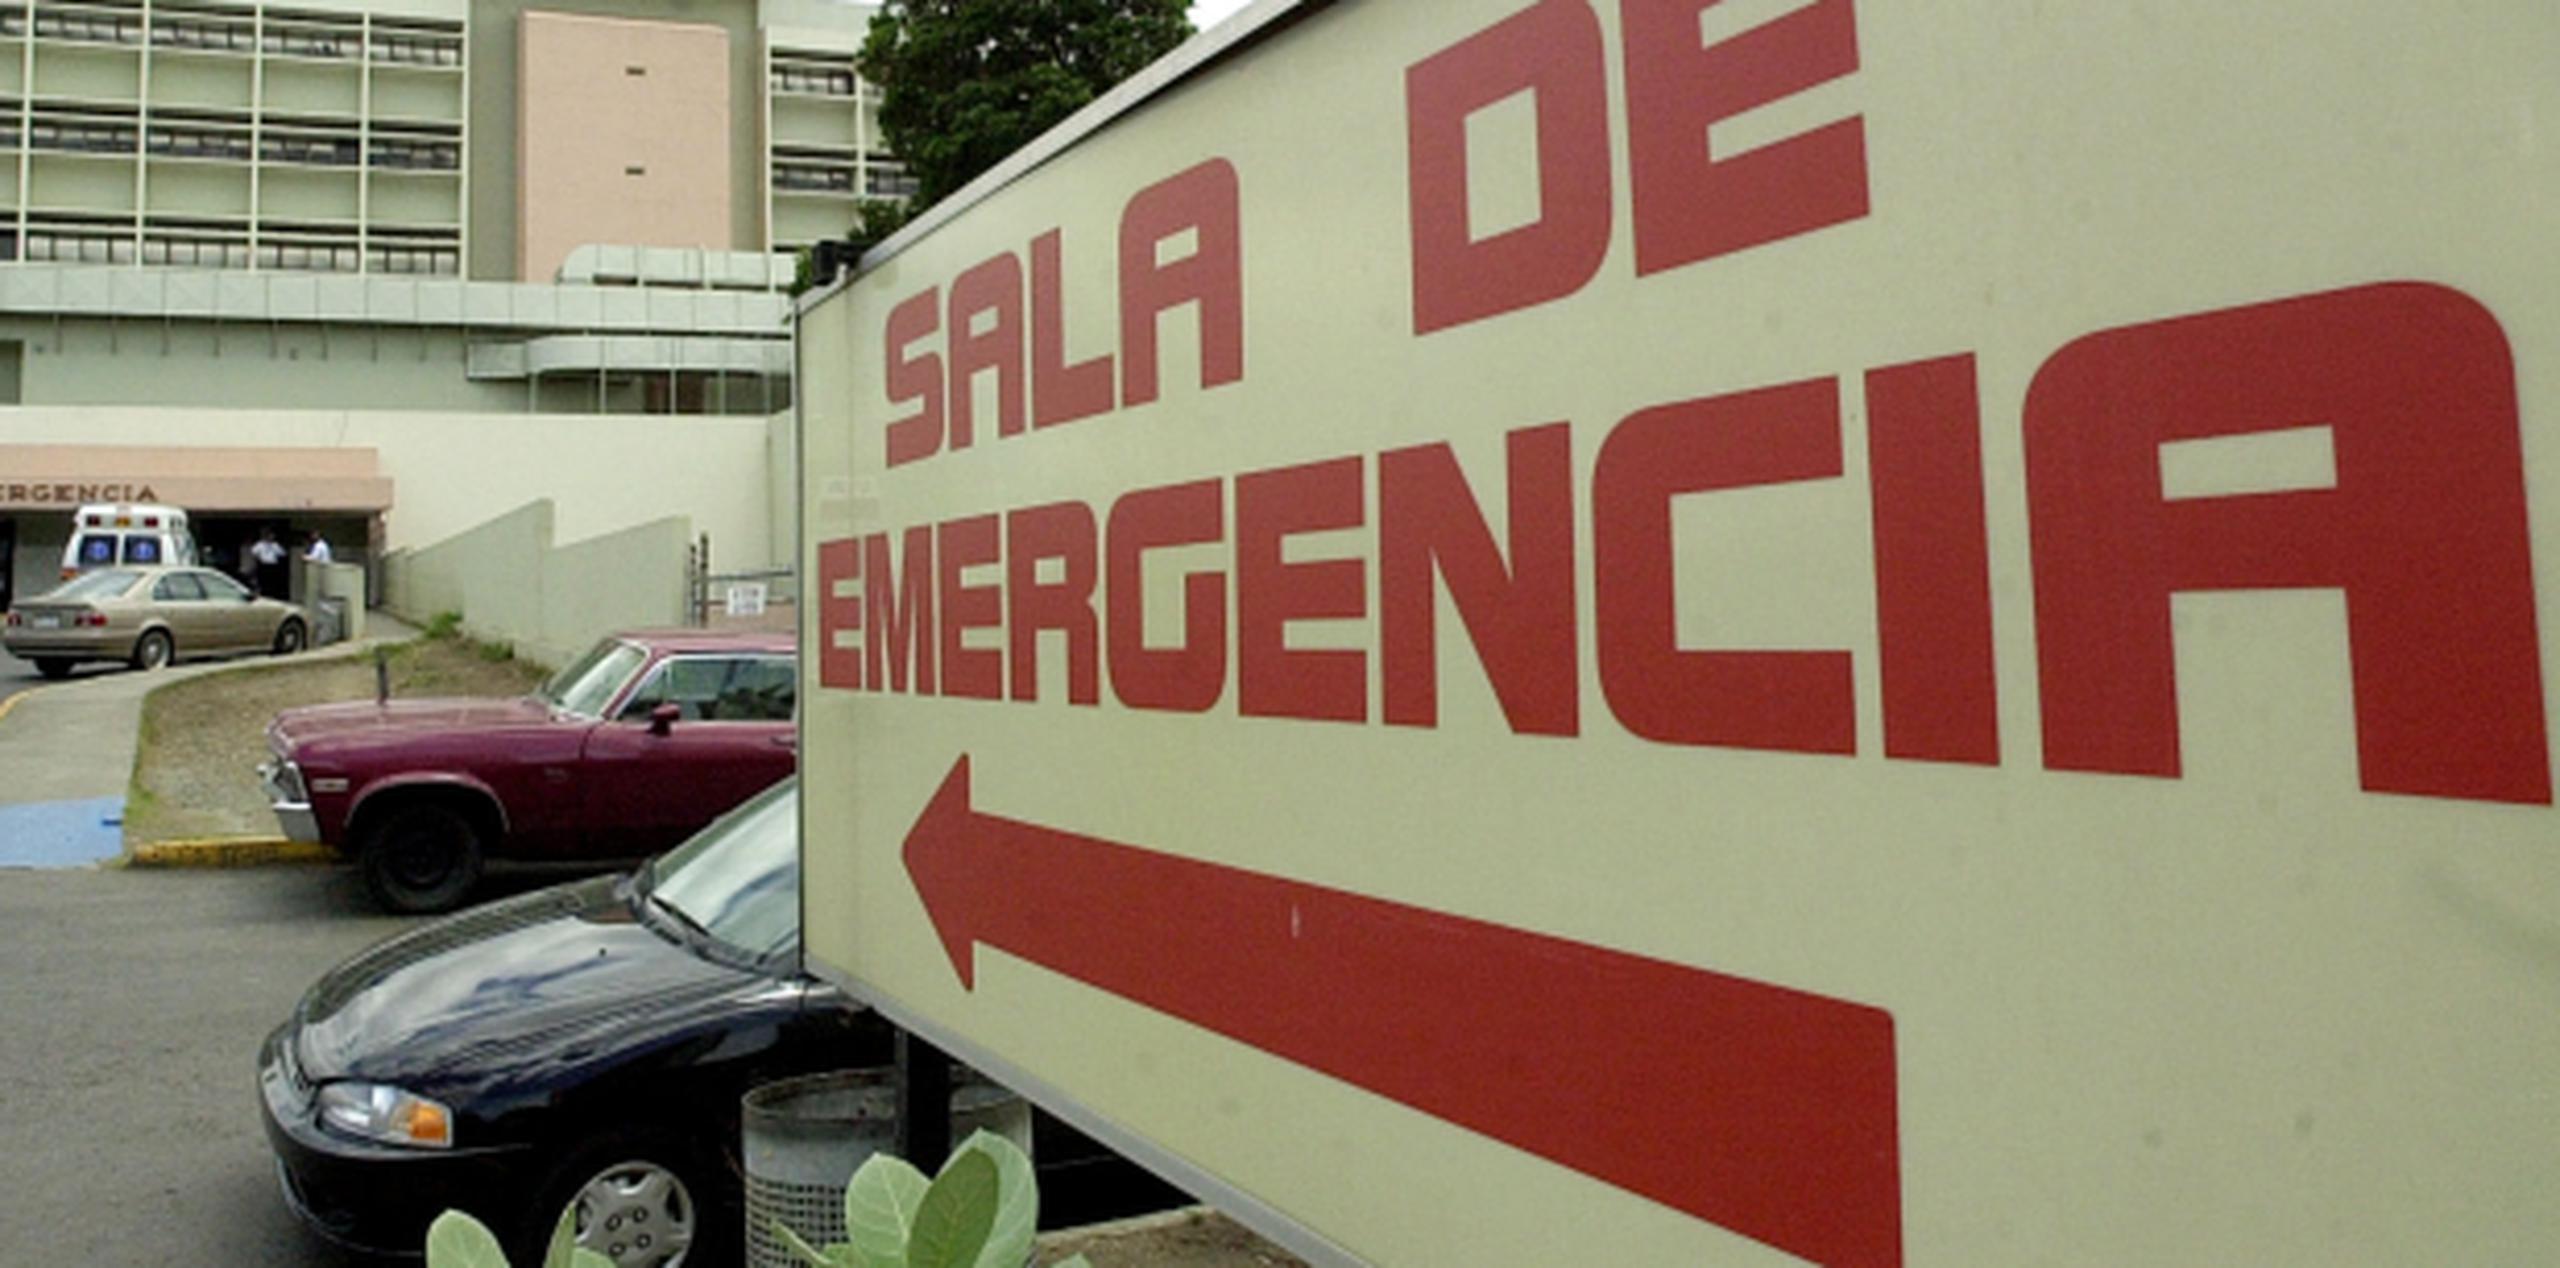 Torres Ruiz, de 45 años, obrero de la construcción, fue transportado por paramédicos hasta un hospital de Yauco donde fue declarado muerto. (Archivo)